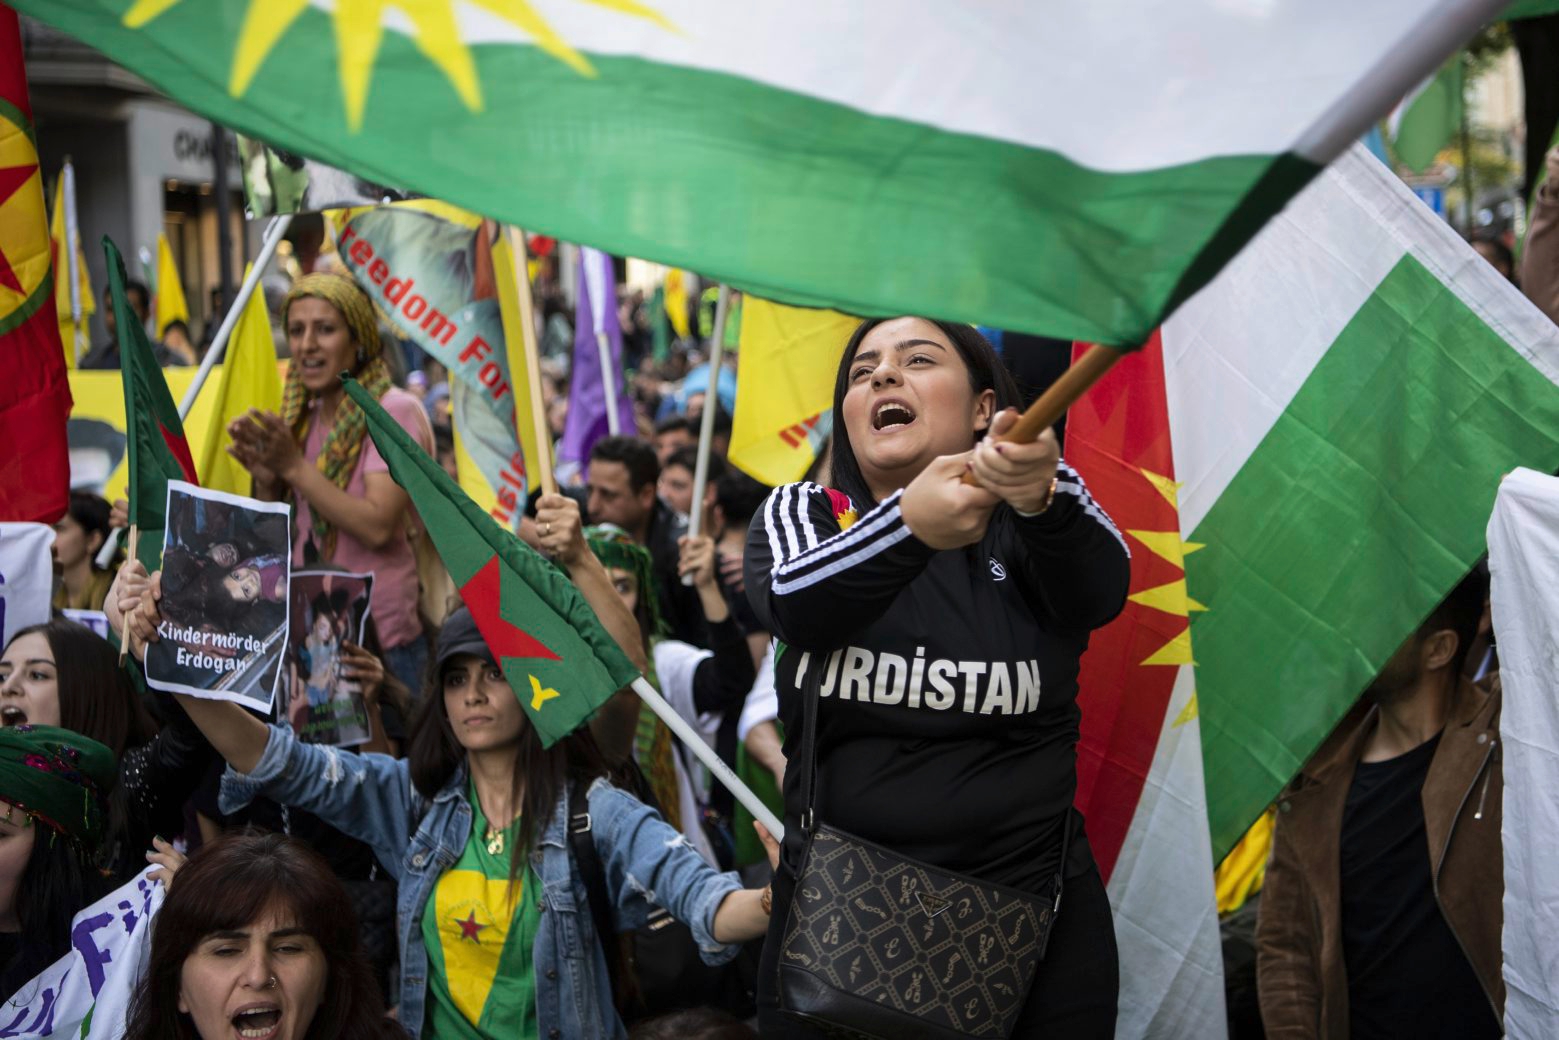 Menschen demonstrieren in Zuerich gegen den tuerkischen Angriff auf die kurdischen Gebiete in Nordsyrien "Gemeinsam fuer Rojava", aufgenommen am Samstag, 12. Oktober 2019. (KEYSTONE/Ennio Leanza) SCHWEIZ ZUERICH DEMONSTRATION "FUER ROJAVA"